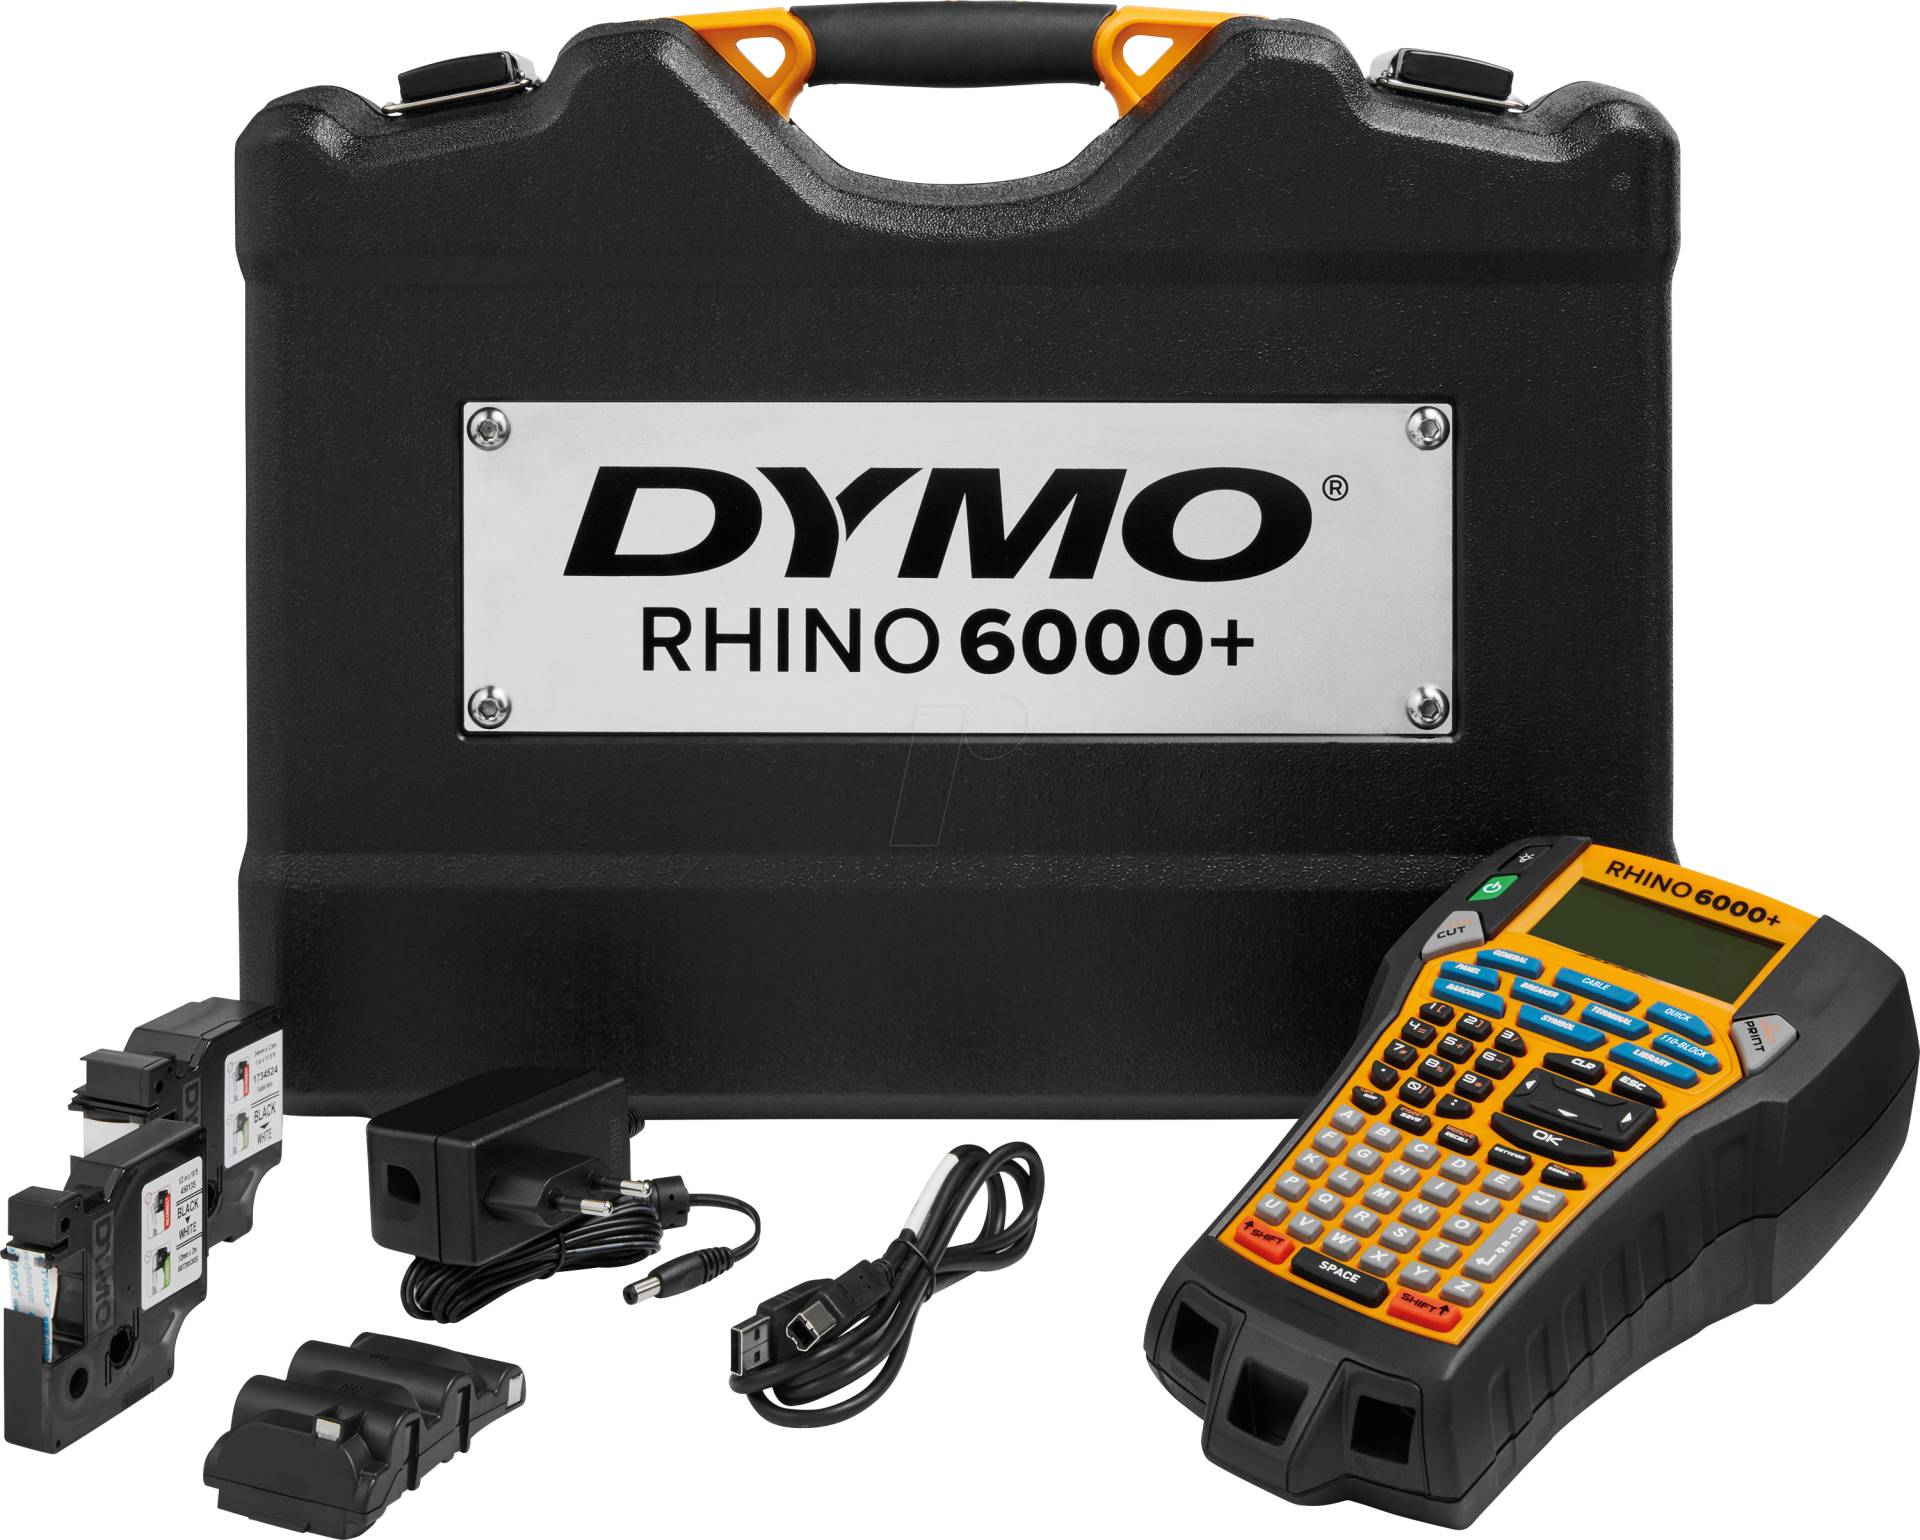 DYMO RHINO 6000+ - DYMO Rhino 6000+ Kofferset von Dymo